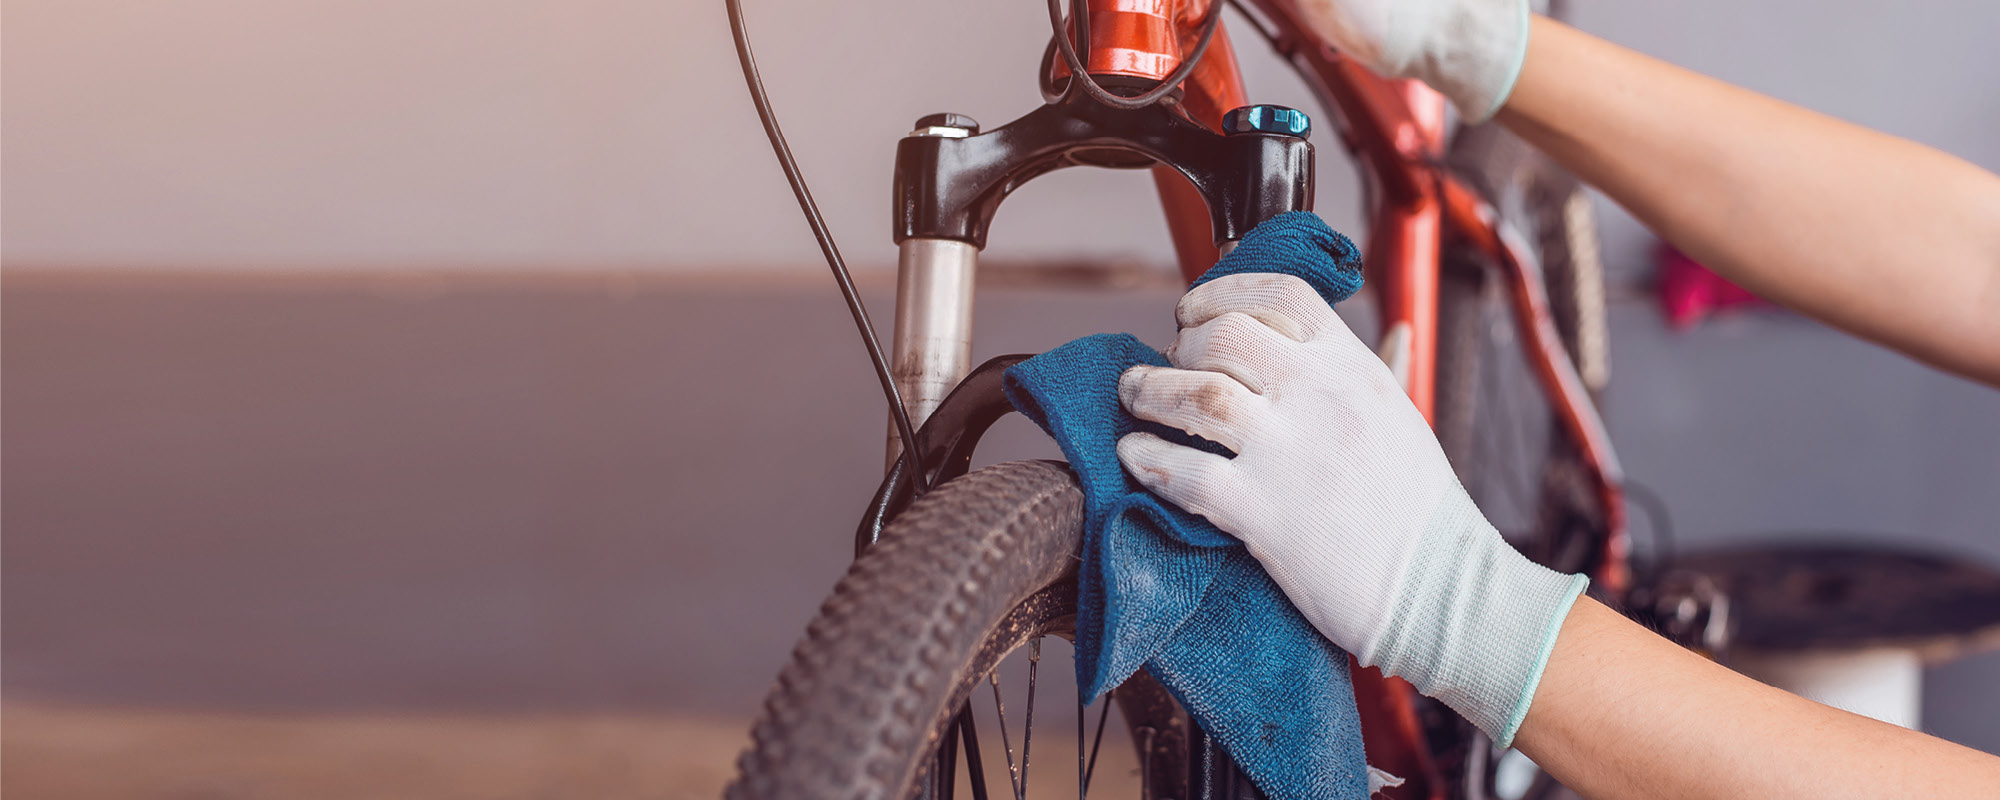 Sauber, sicher, schnell - Die besten Tipps zum Fahrrad reinigen